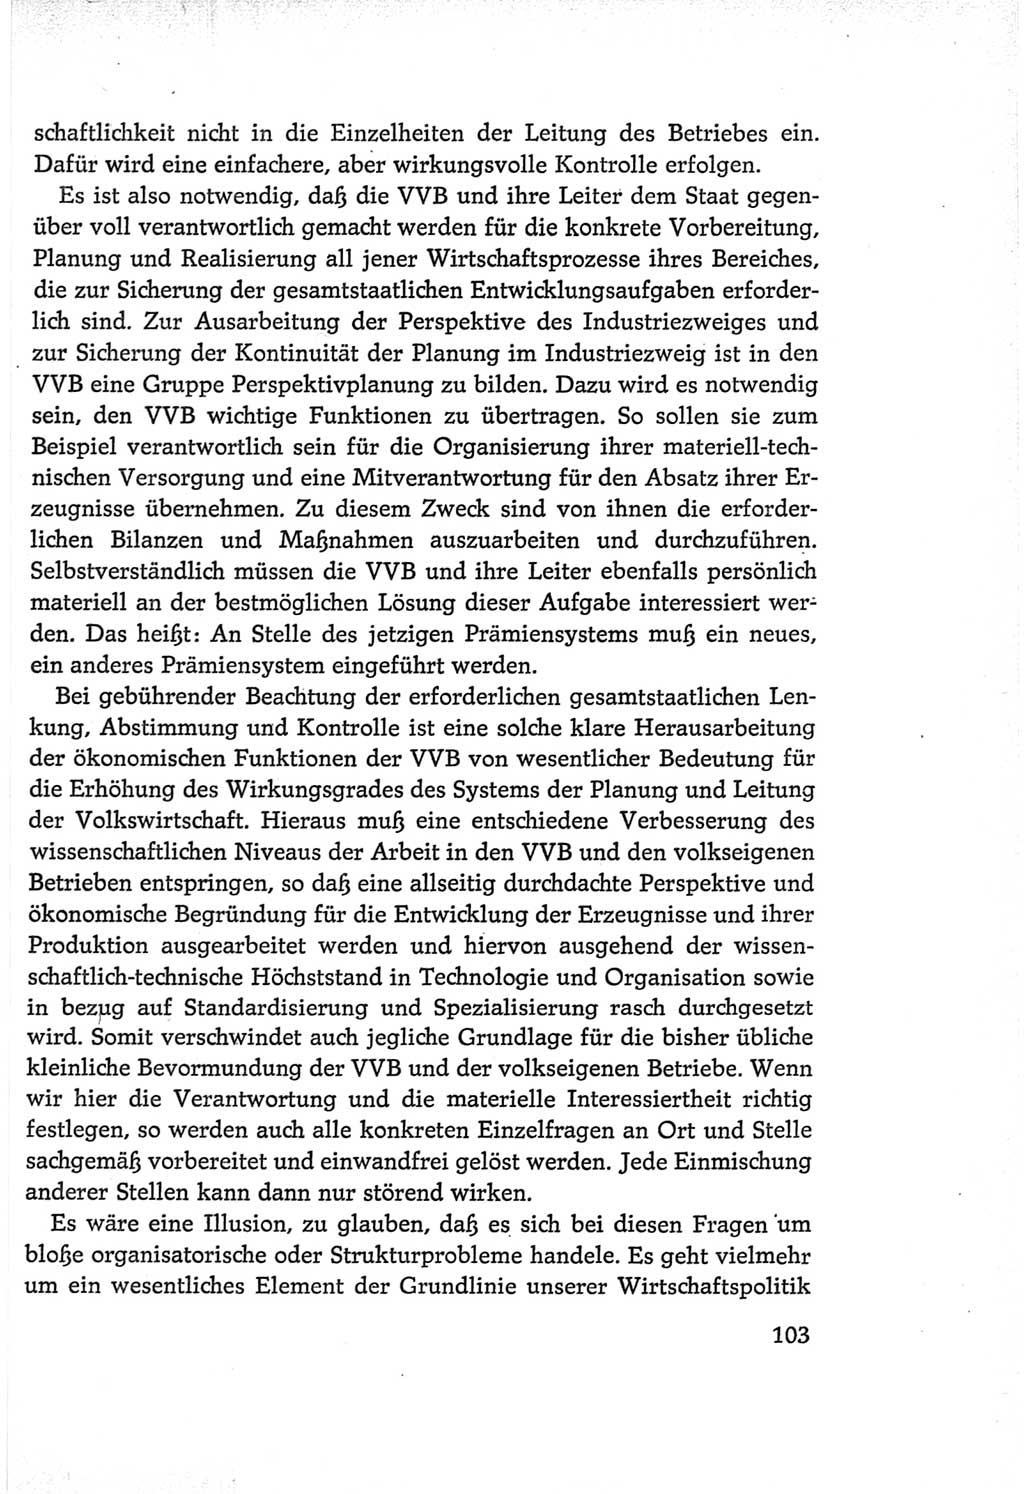 Protokoll der Verhandlungen des Ⅵ. Parteitages der Sozialistischen Einheitspartei Deutschlands (SED) [Deutsche Demokratische Republik (DDR)] 1963, Band Ⅰ, Seite 103 (Prot. Verh. Ⅵ. PT SED DDR 1963, Bd. Ⅰ, S. 103)